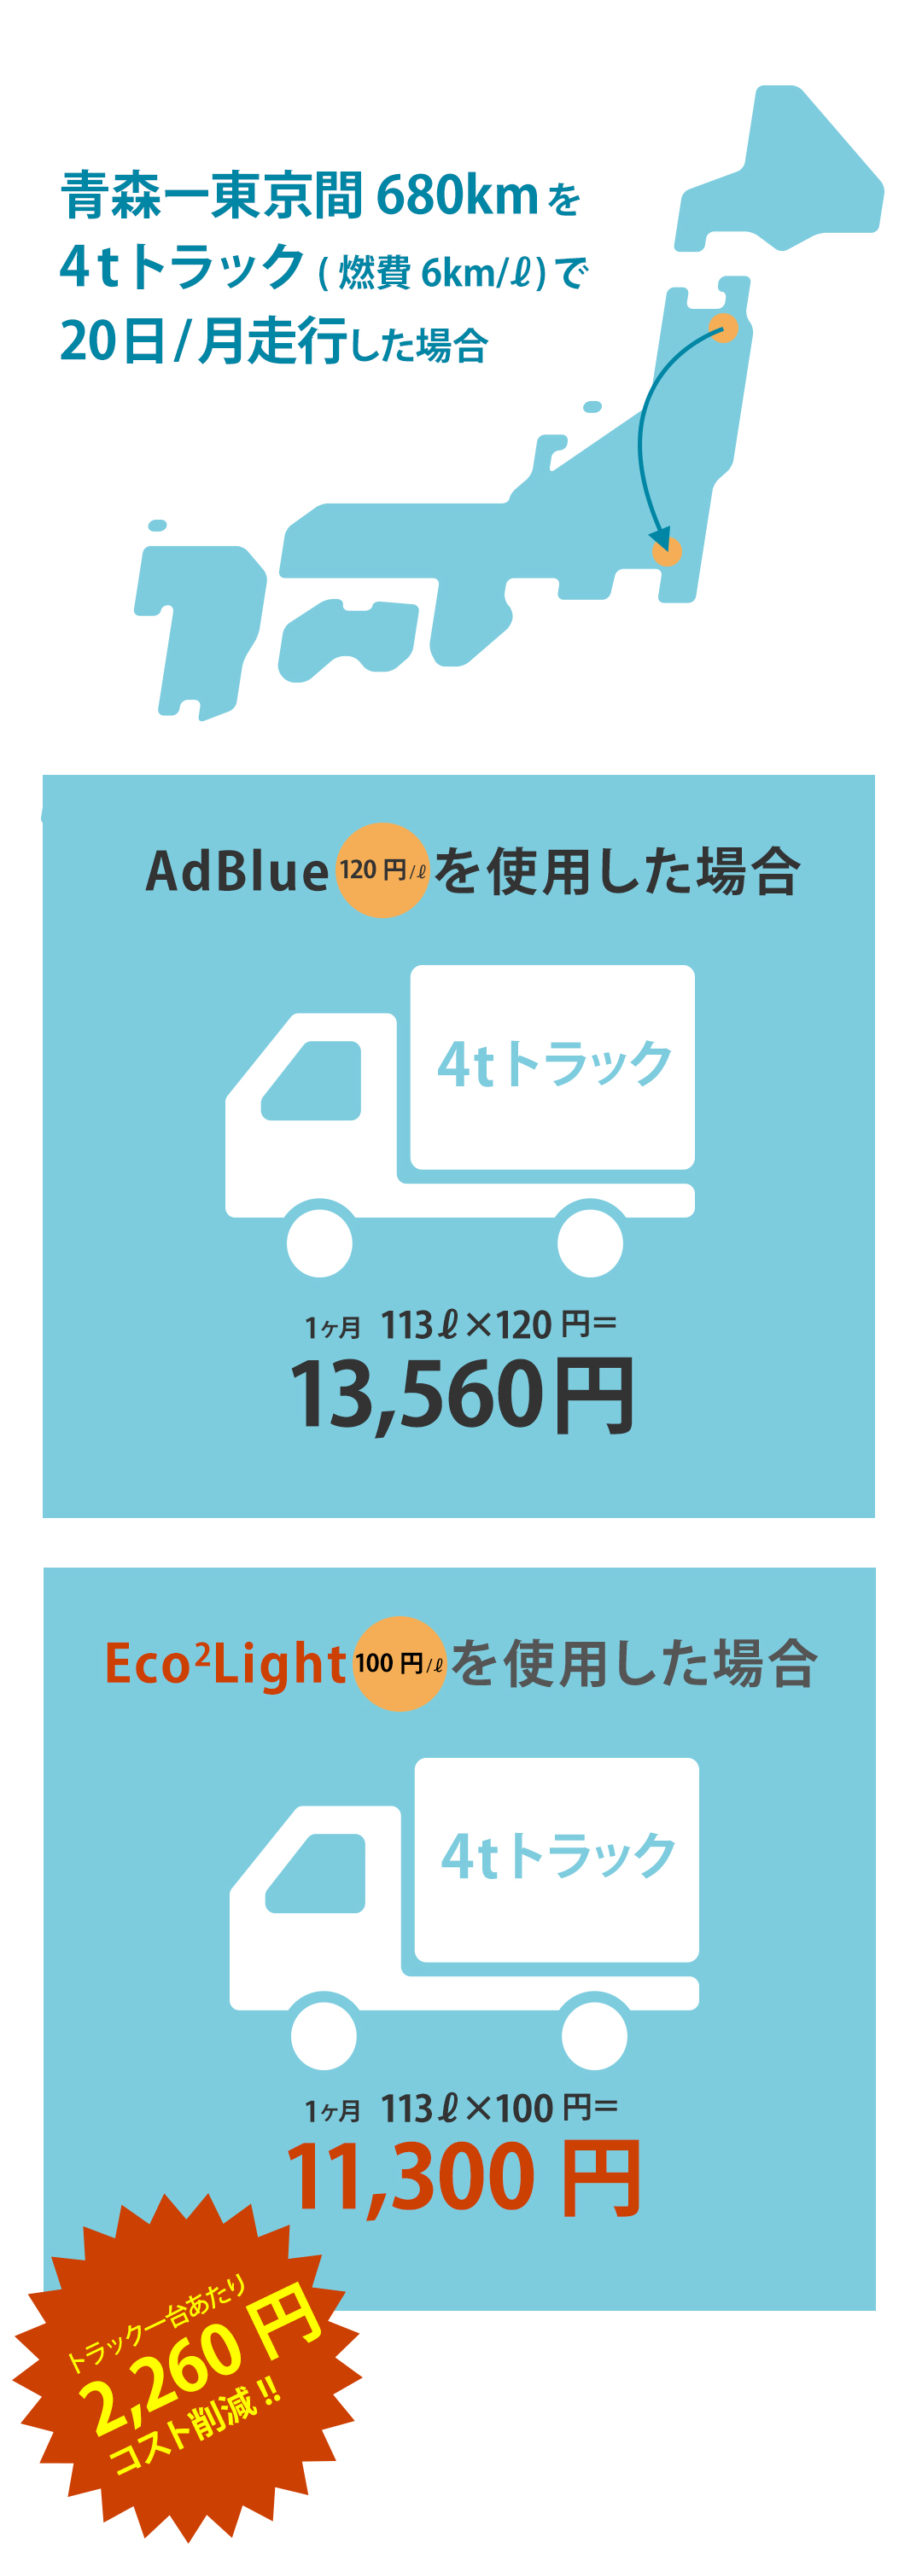 AdBlue®からEco2Lightにすると、大幅なコスト削減になります。